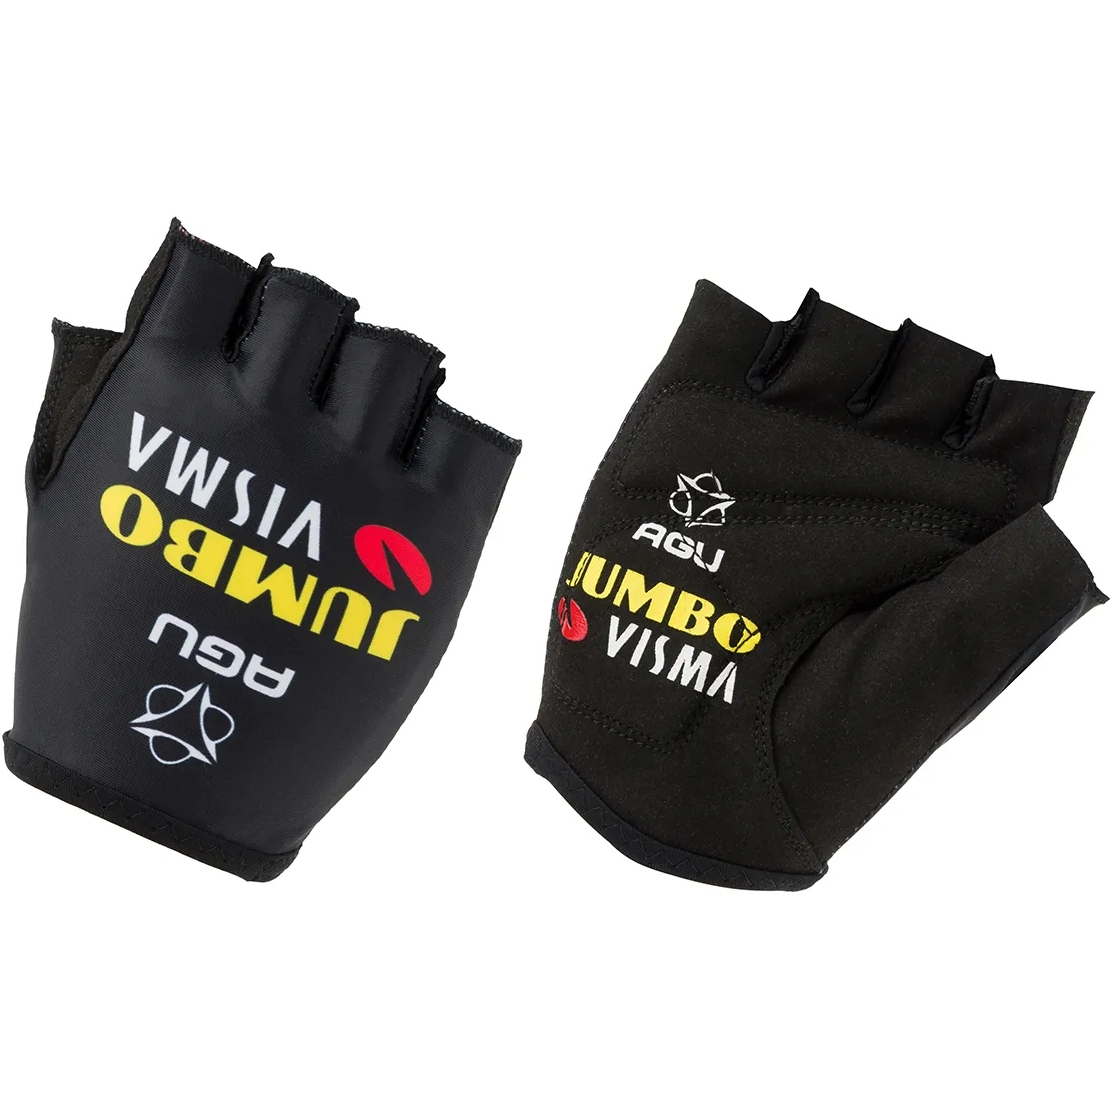 Productfoto van AGU Team Jumbo-Visma Replica Handschoenen - zwart